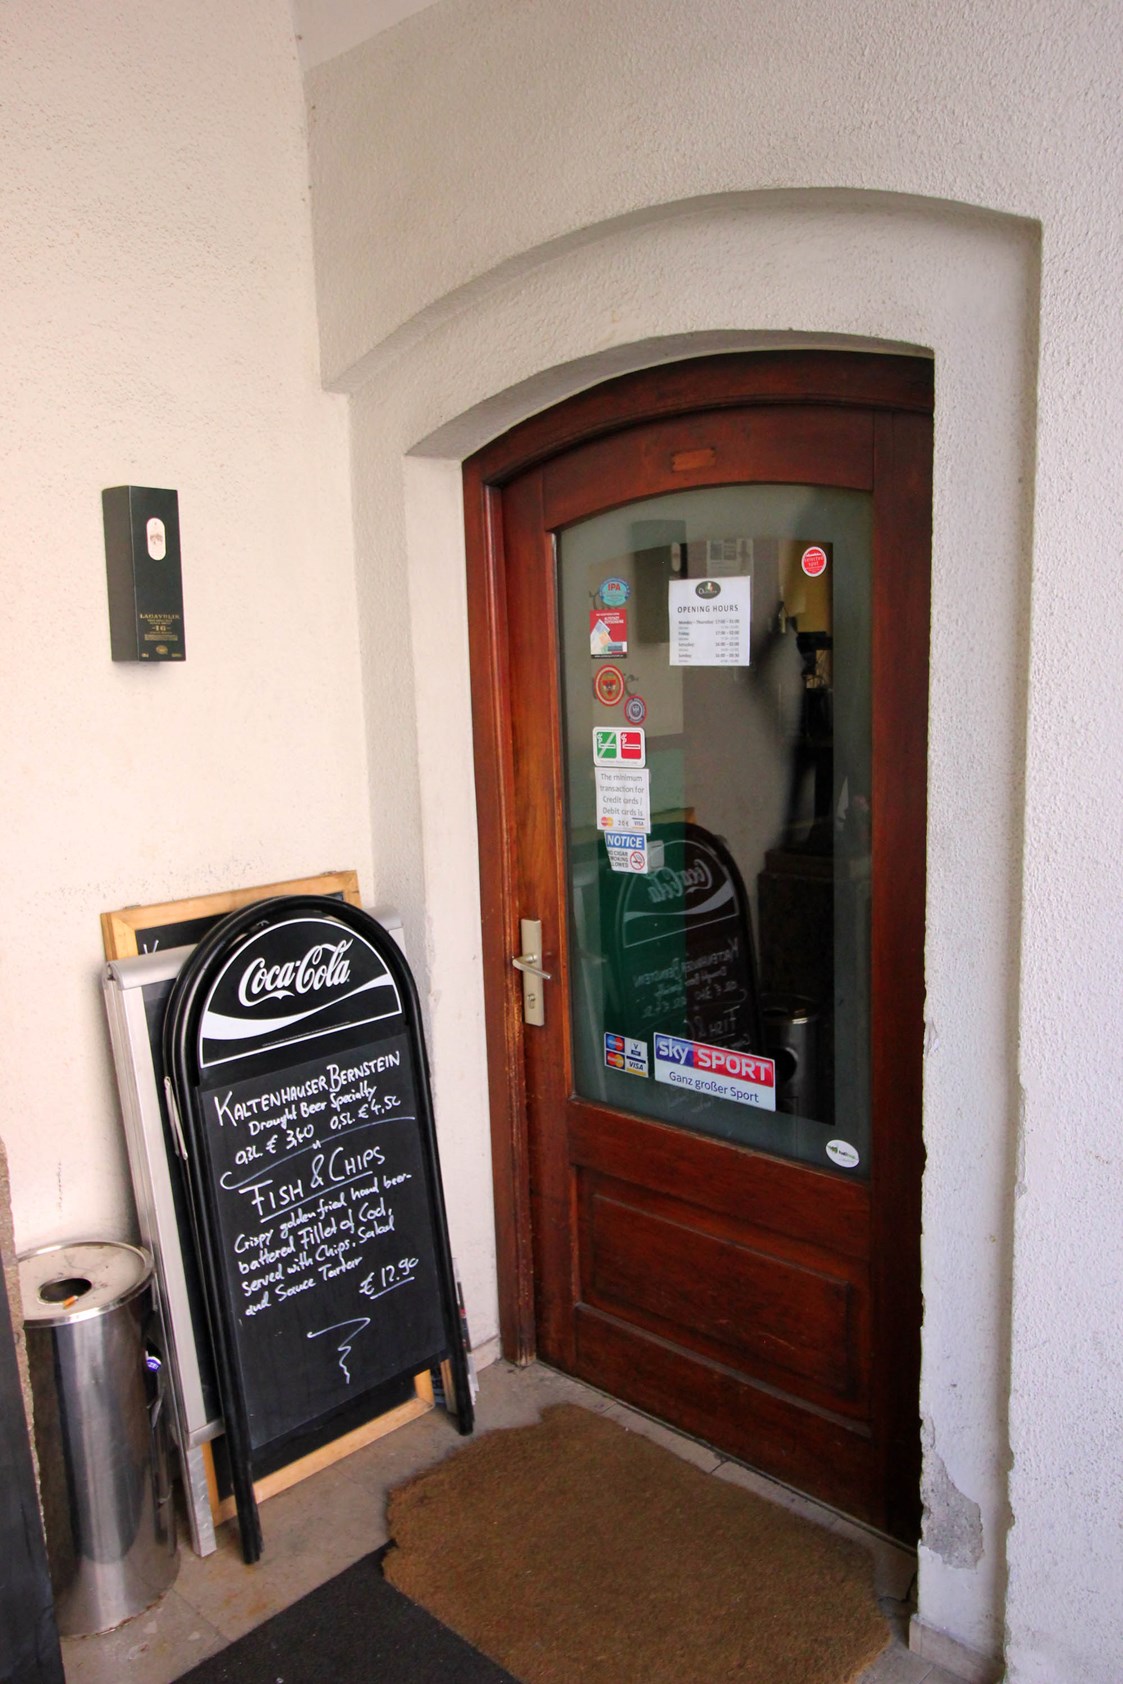 Restaurant: The Dubliner Irish Pub